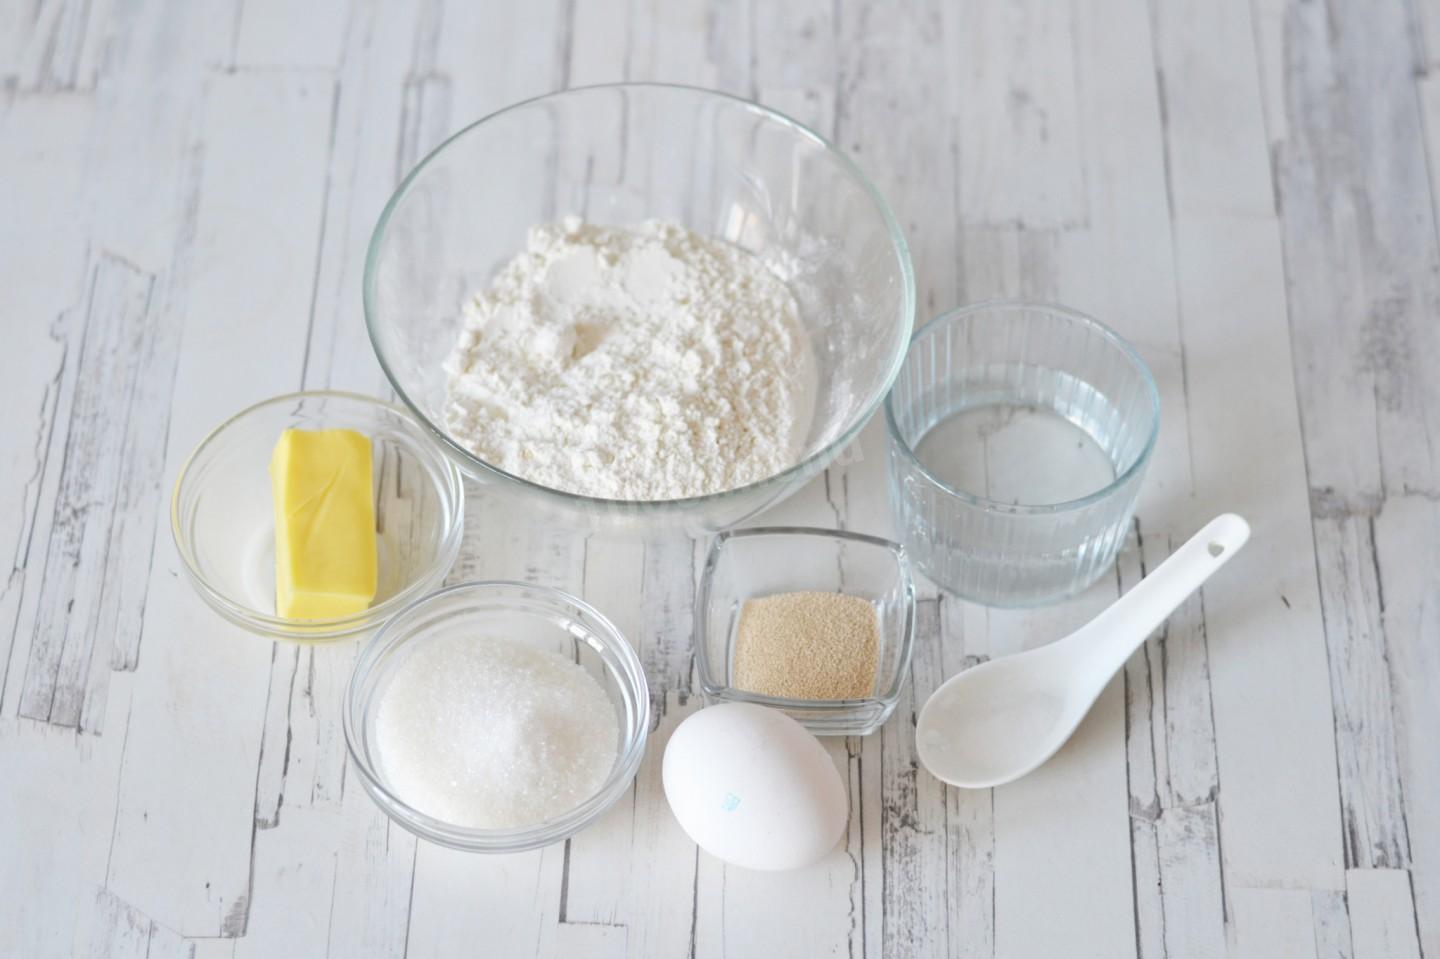 Мука соль. 80 Г муки. Мука сахар дрожжи вода яйца. Мука соль поделки.